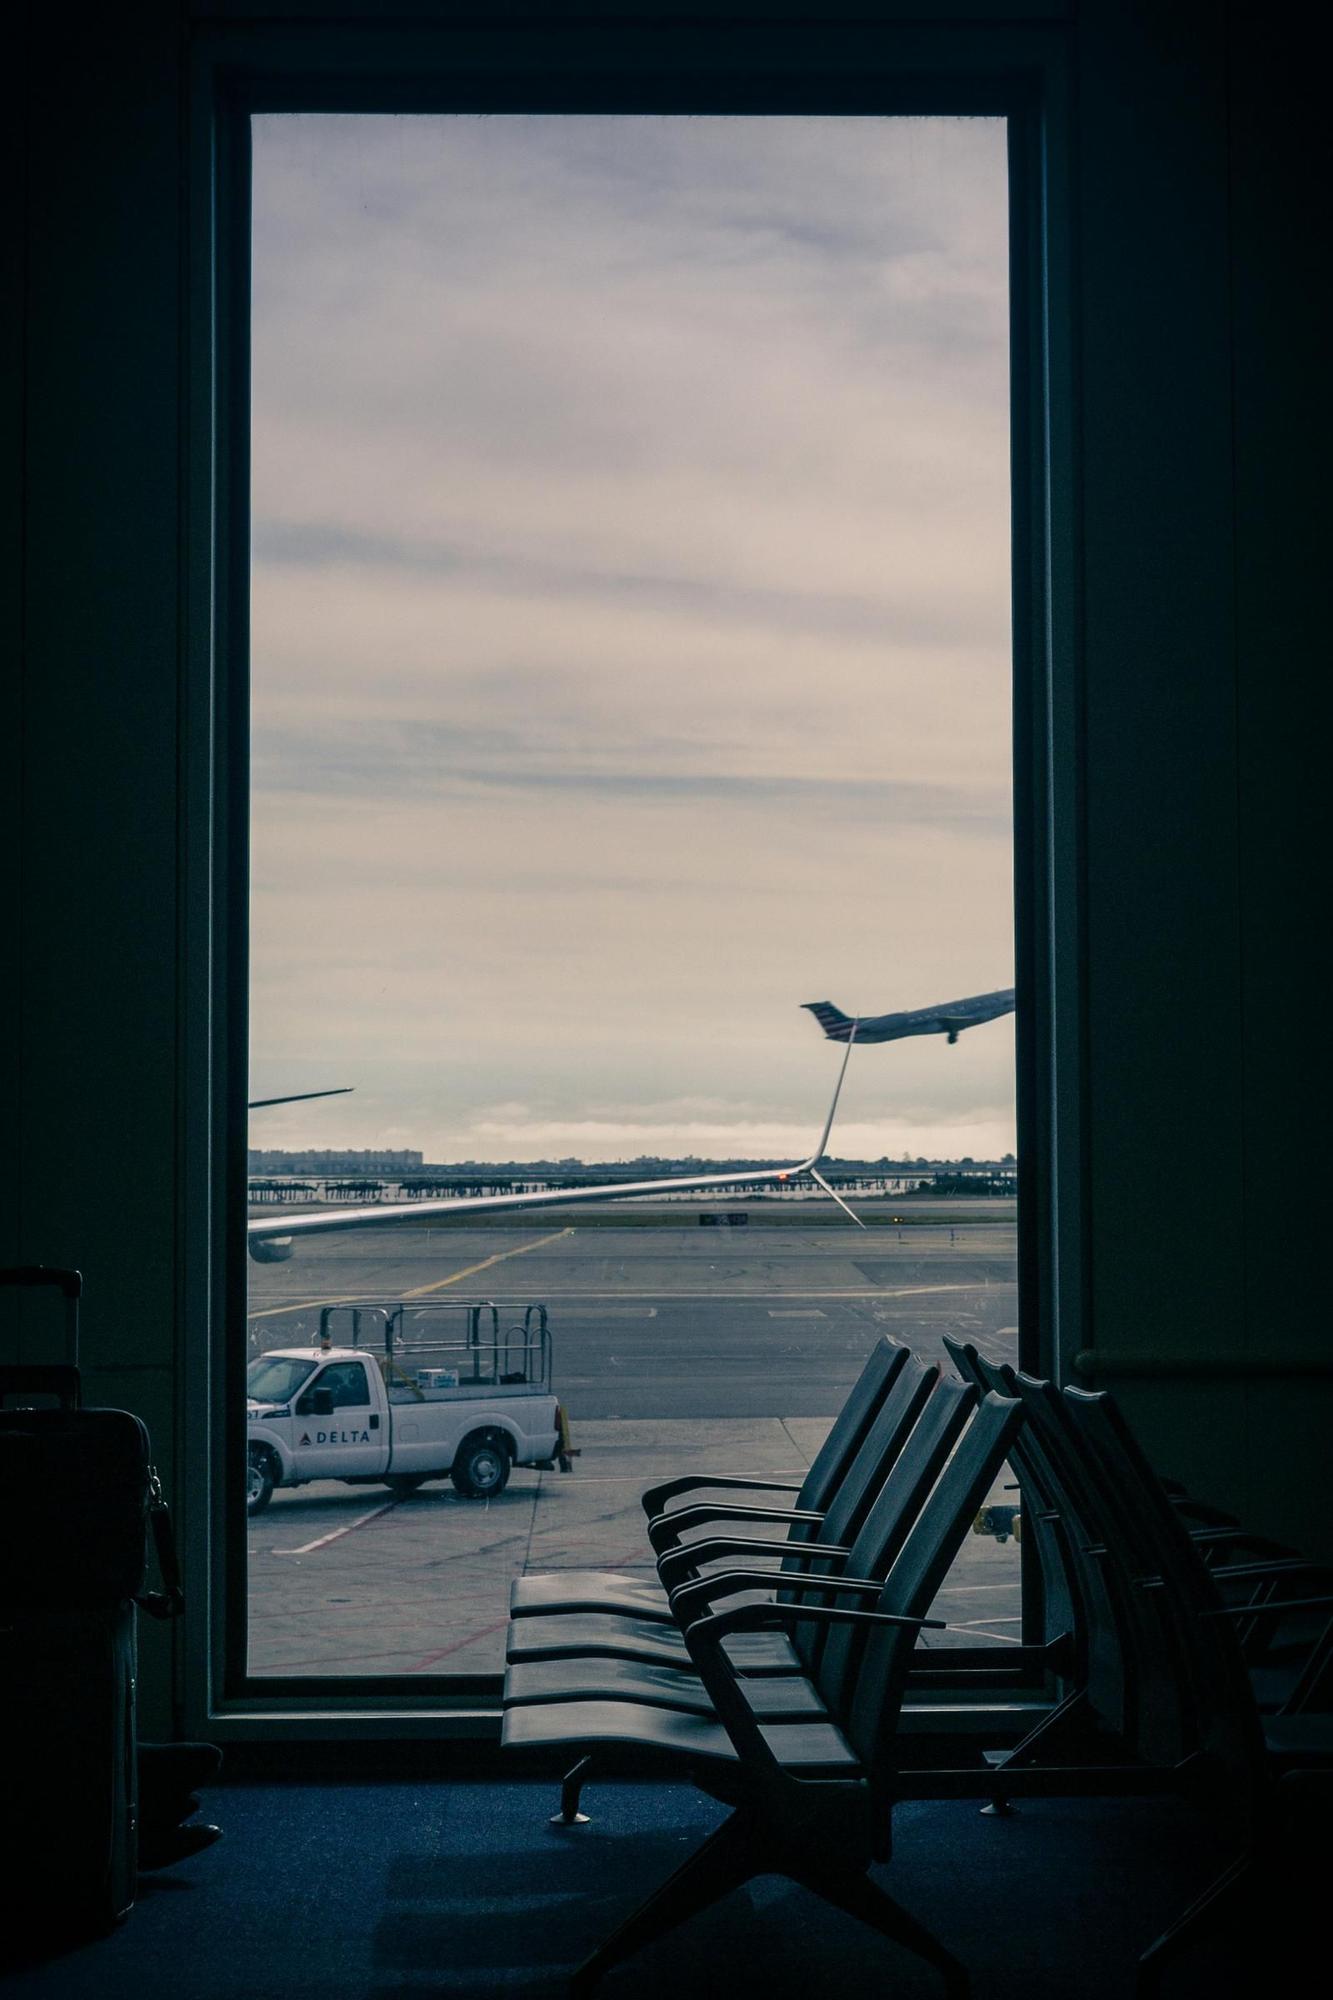 Algunos aeropuertos disponen de asientos que se se pueden convertir en hamacas, así que es interesante explorar el aeropuerto para encontrarlos.